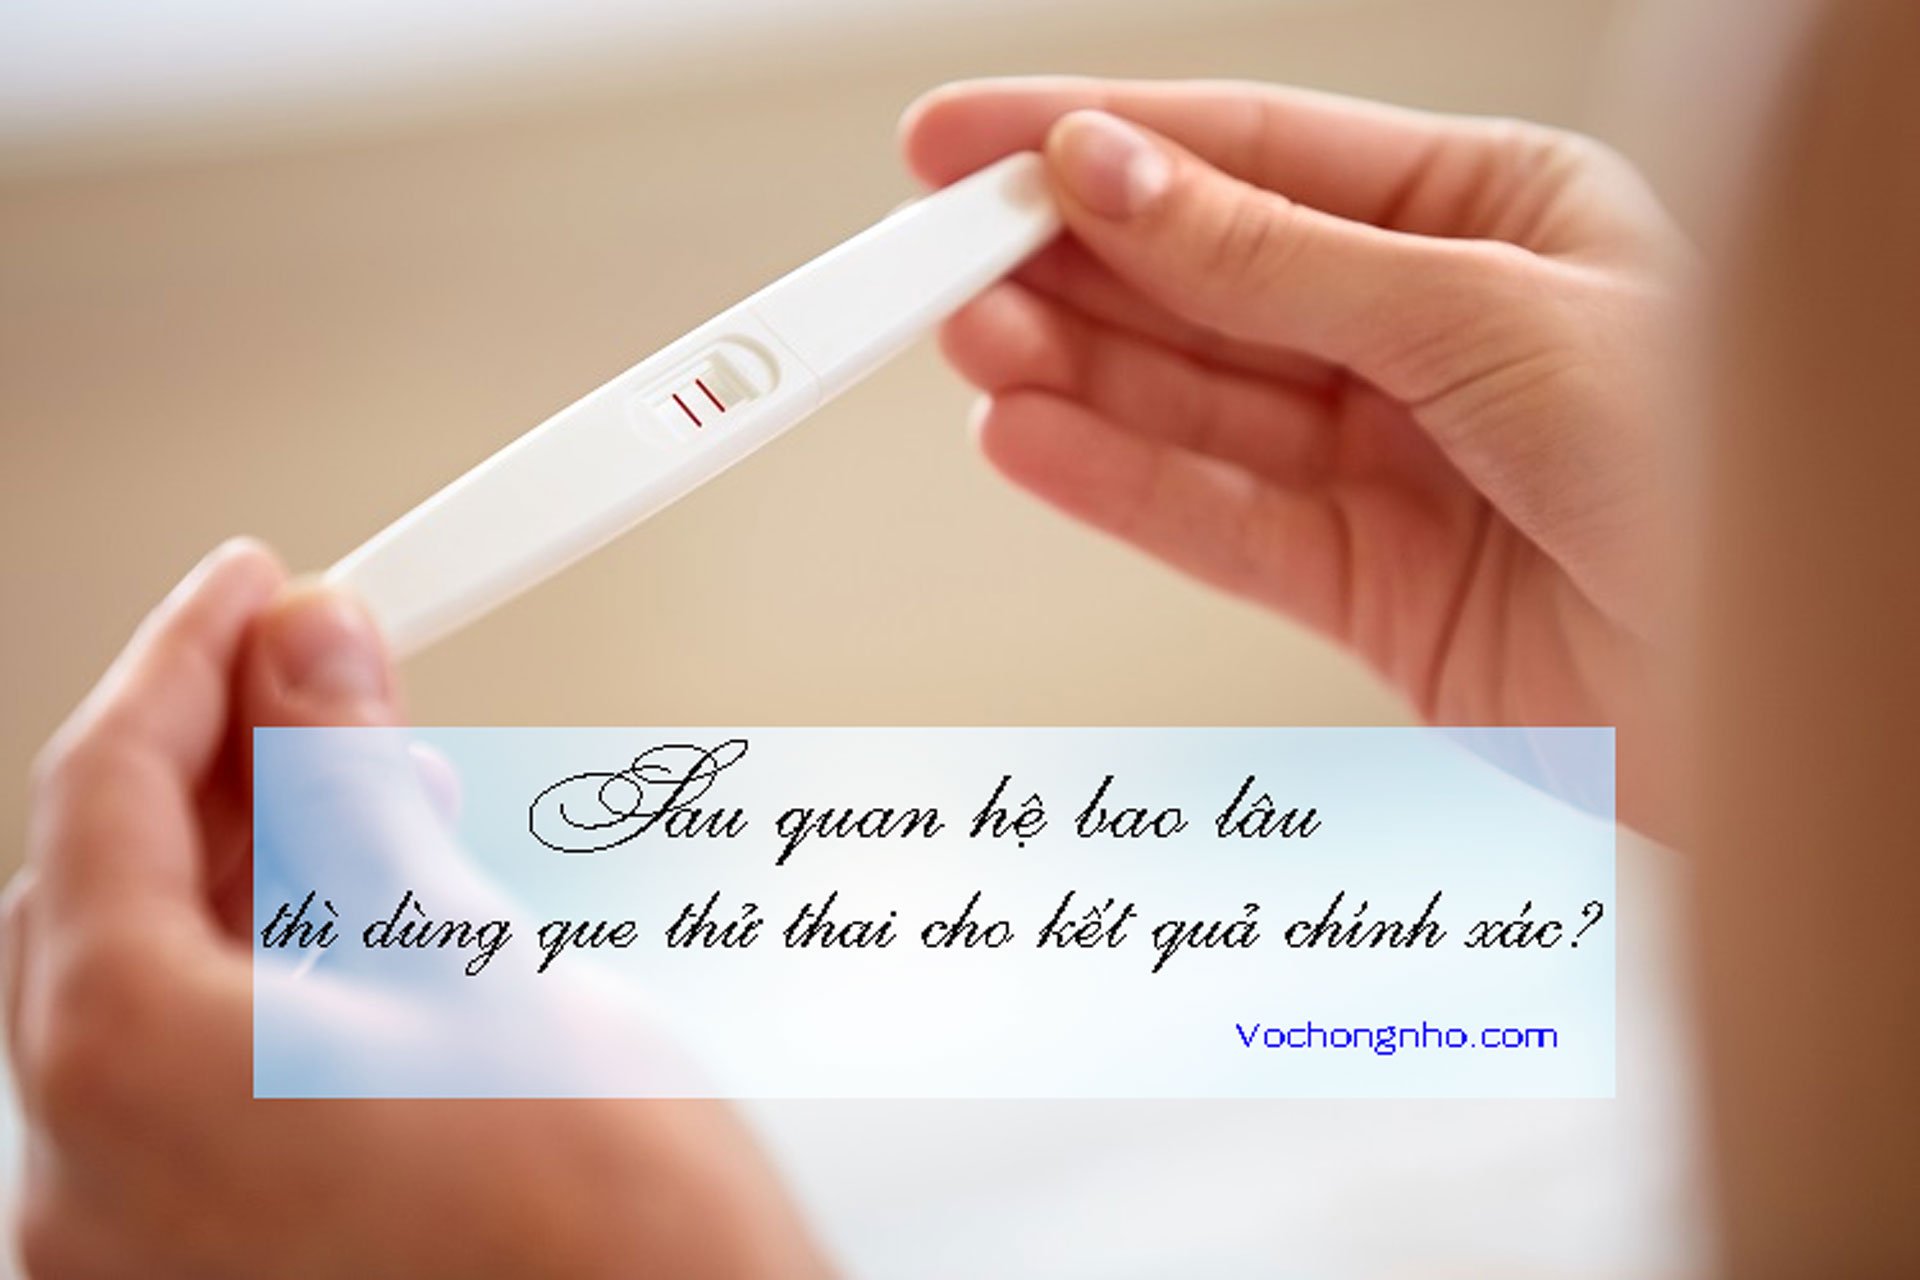 Sau quan hệ bao lâu thì dùng que thử thai cho kết quả chính xác?